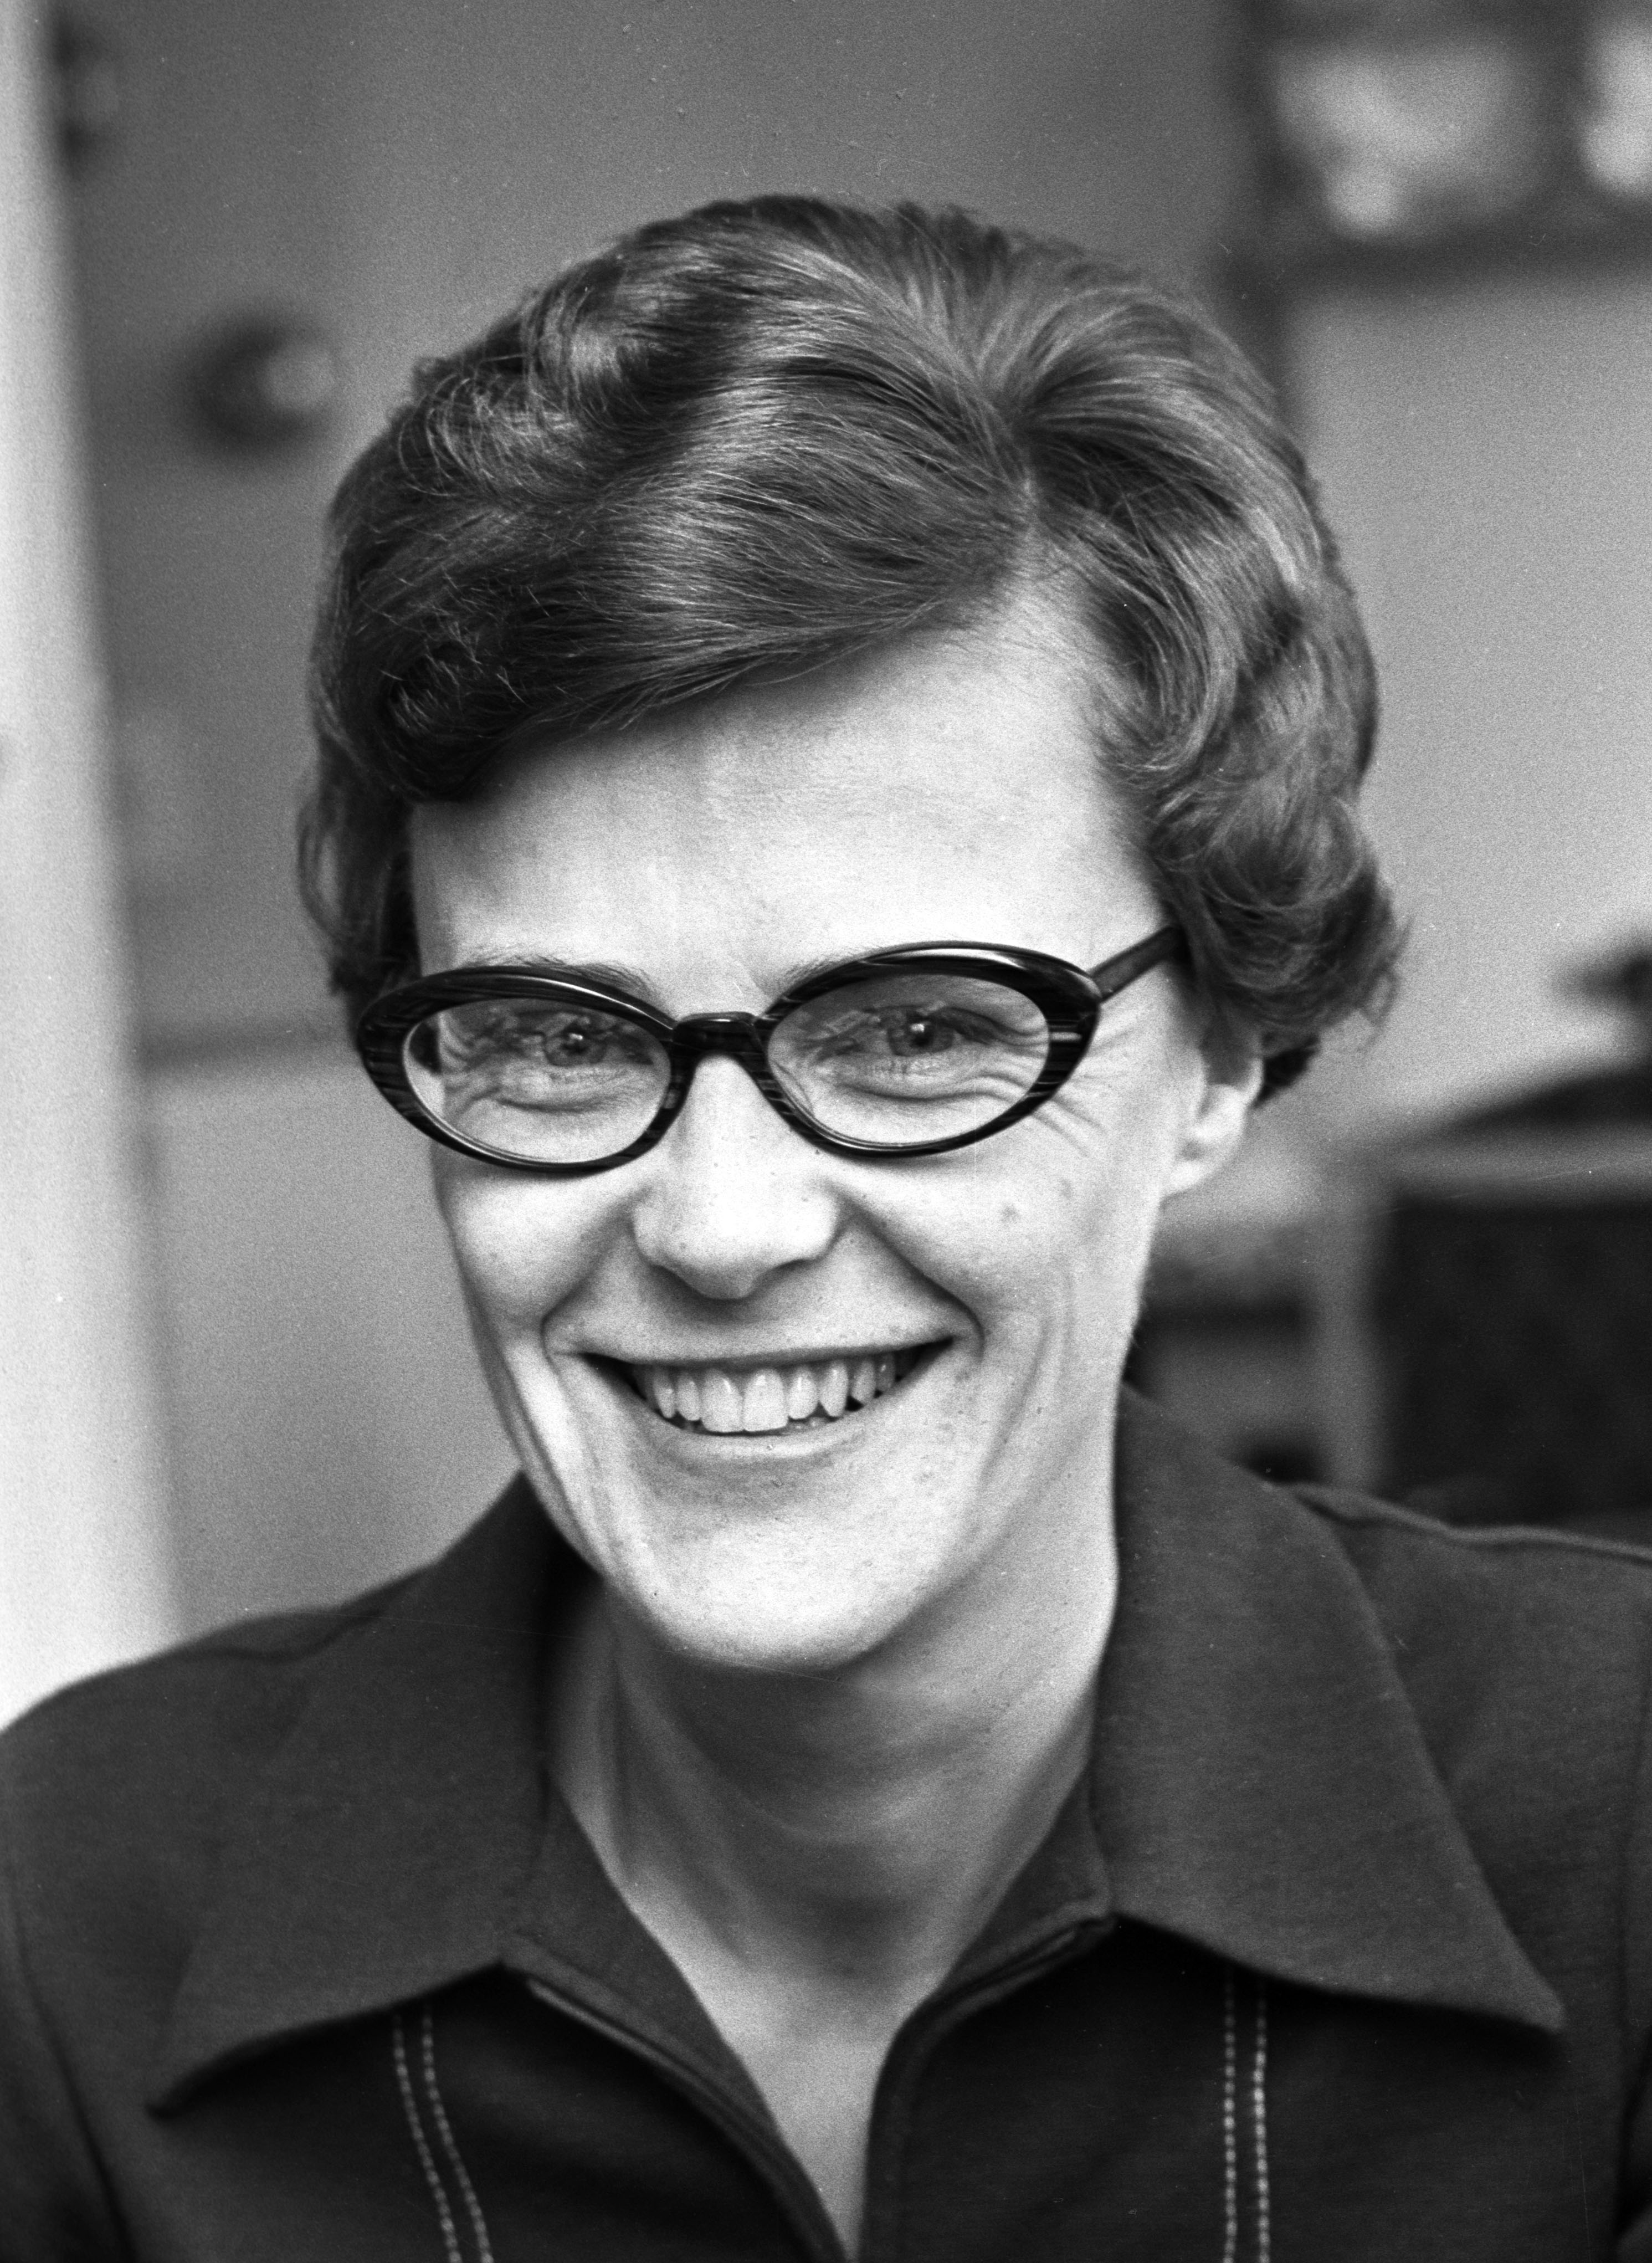 Kim Friele i 1971 da hun var generalsekretær i homoforbundet «Det Norske Forbund av 1948». På dette tidspunktet var homofili fremdeles forbudt i Norge. Foto: Vidar Knai / NTB